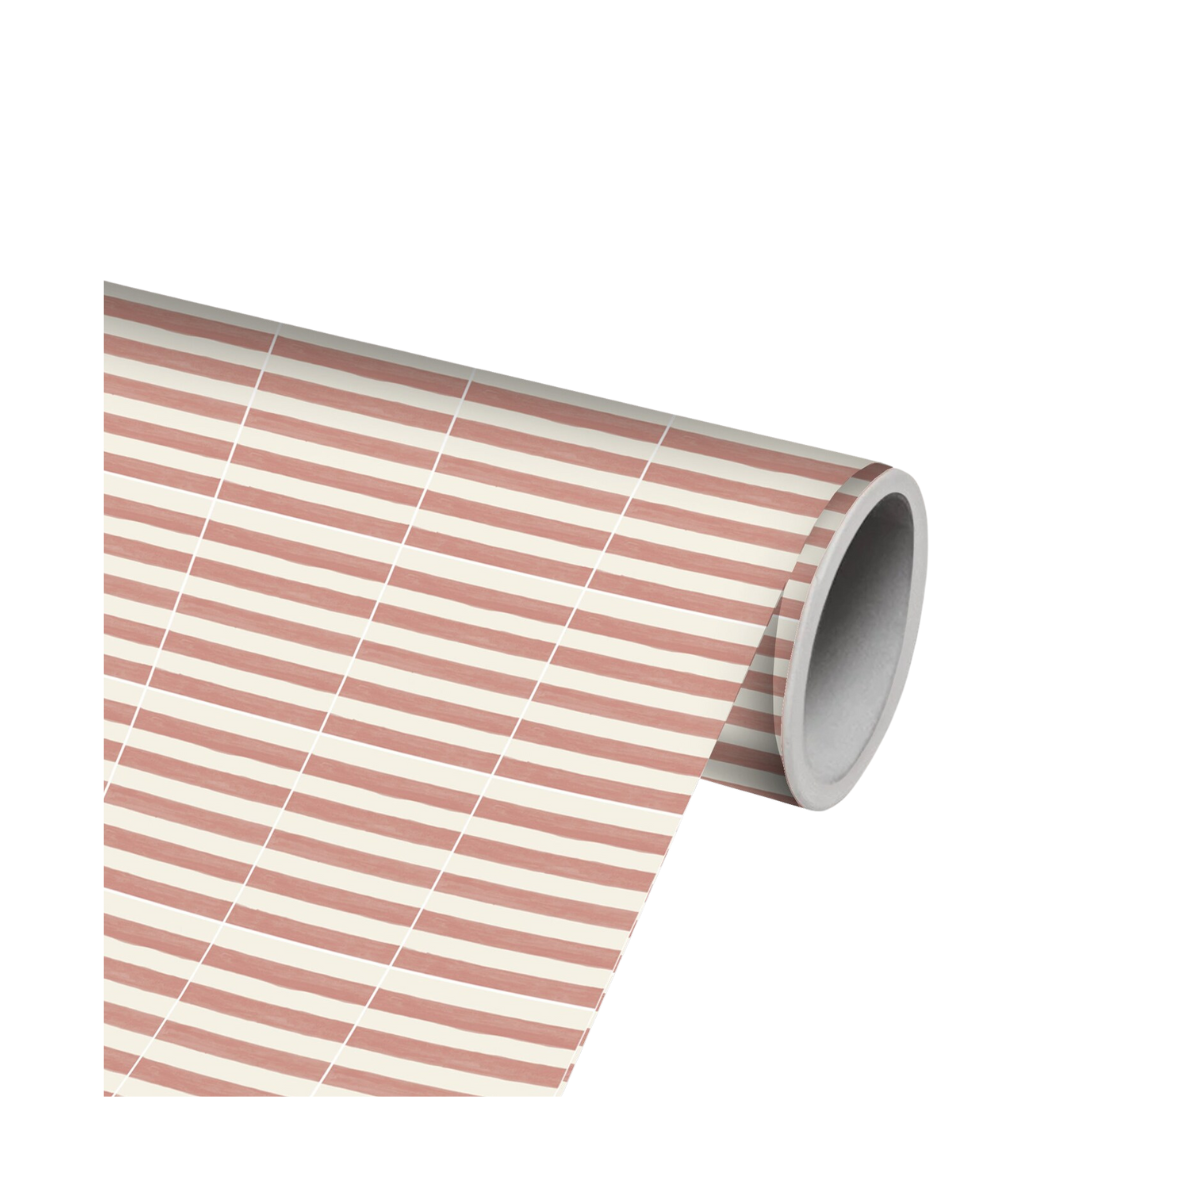 Stripe Stick On Tiles